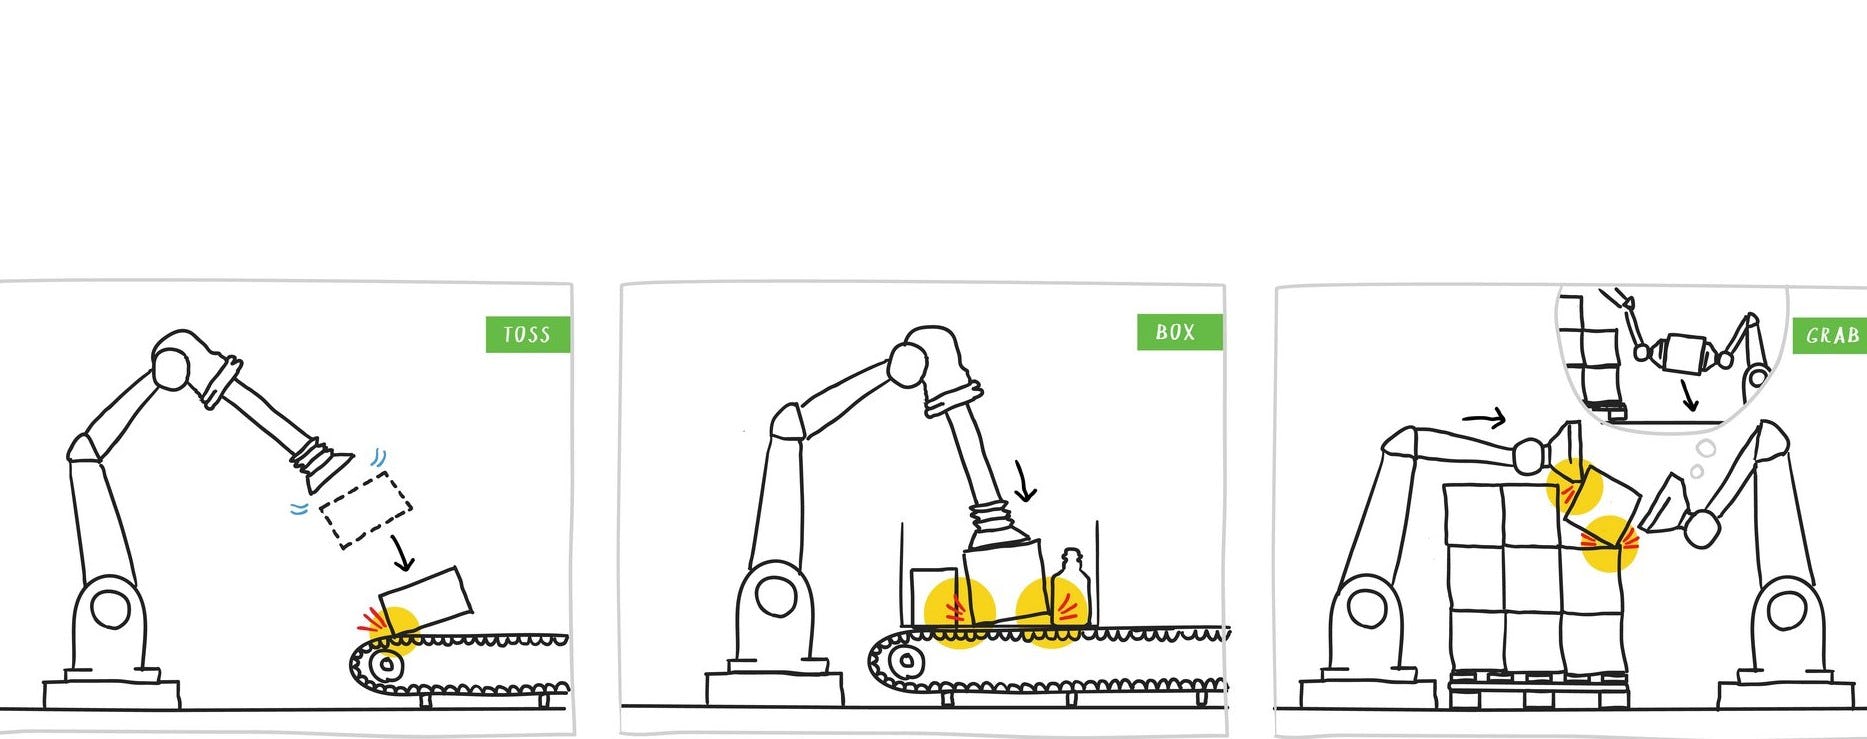 In het onderzoeksproject I.AM worden drie scenario’s onderzocht voor de toepassing van impact-bewuste robots. Elk scenario is complexer dan het vorige. In scenario 1 wordt een pakje op een lopende band geworpen (TOSS). In scenario 2 wordt een pakje in een krat geplaatst (BOX). In scenario 3 wordt een zwaar pakje van een pallet gehaald (GRAB). (Illustratie: http://www.visueeltjes.nl/)